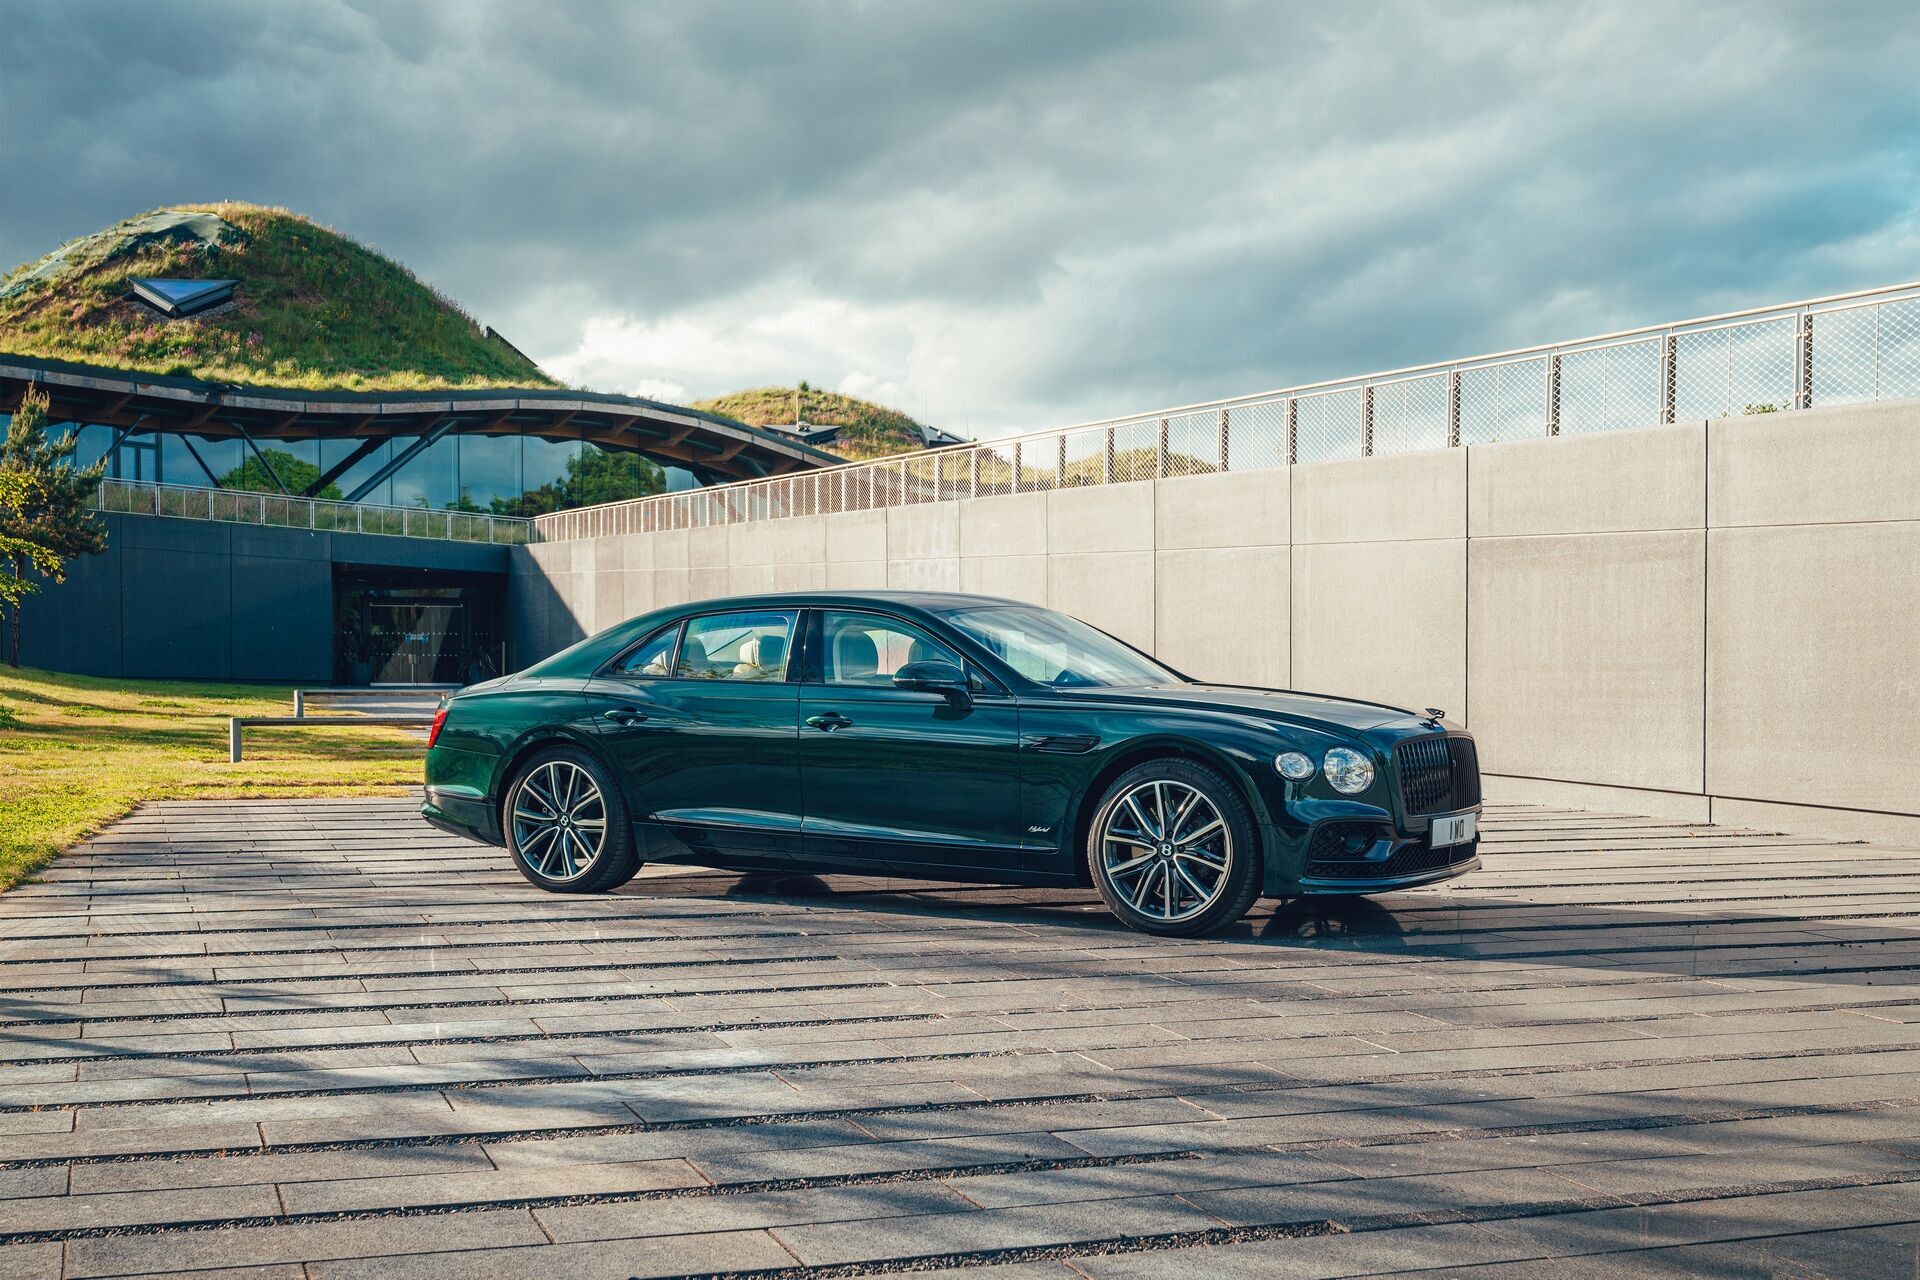 Автомобиль выбрасывает в атмосферу всего 75 г/км CO2, что является абсолютным рекордом для автомобилей марки Bentley